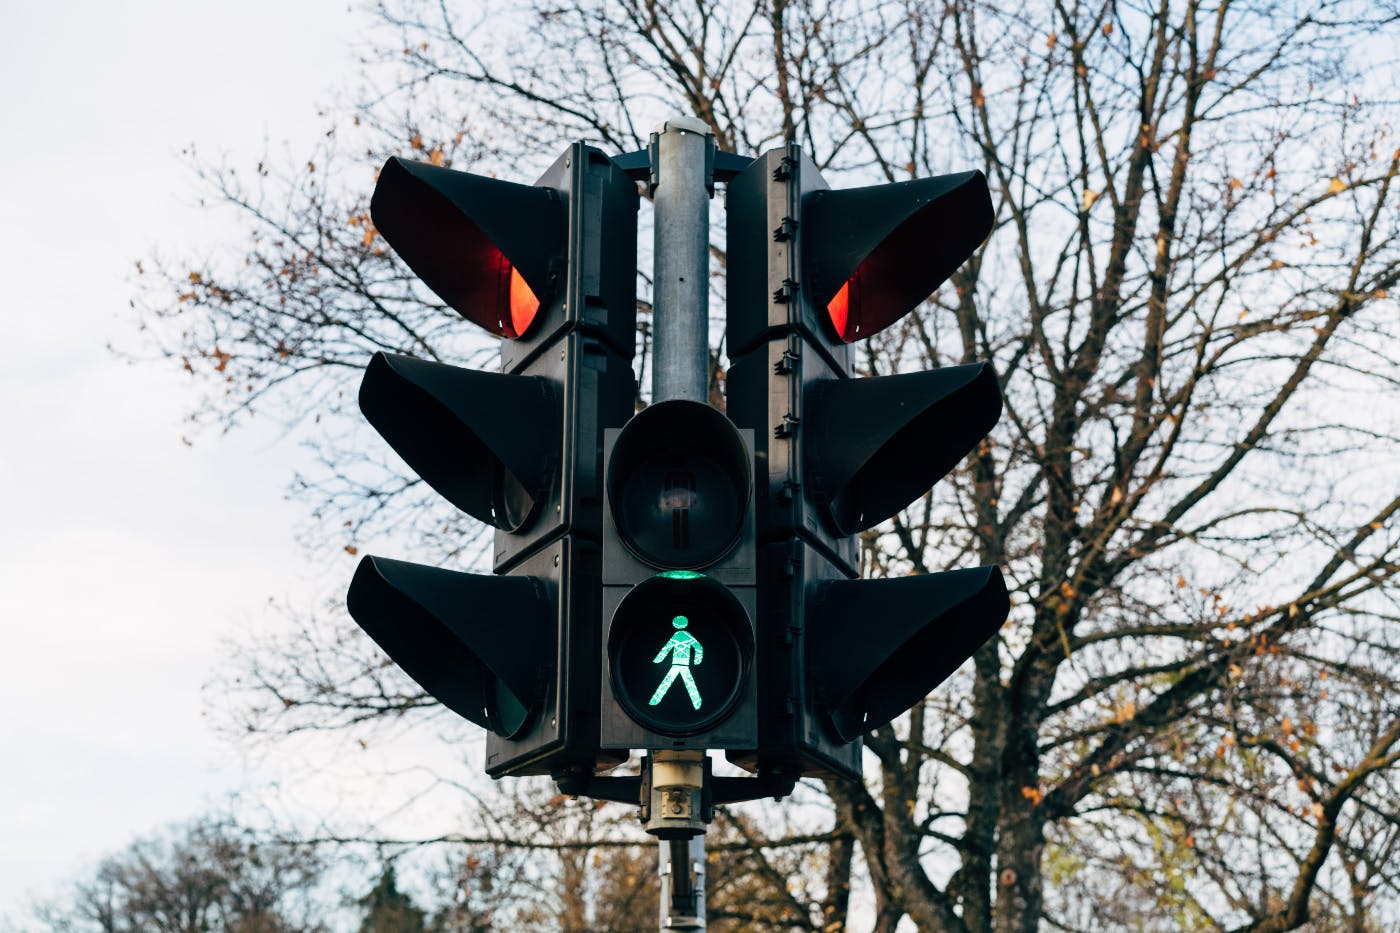 a traffic light with a little green walking man lit